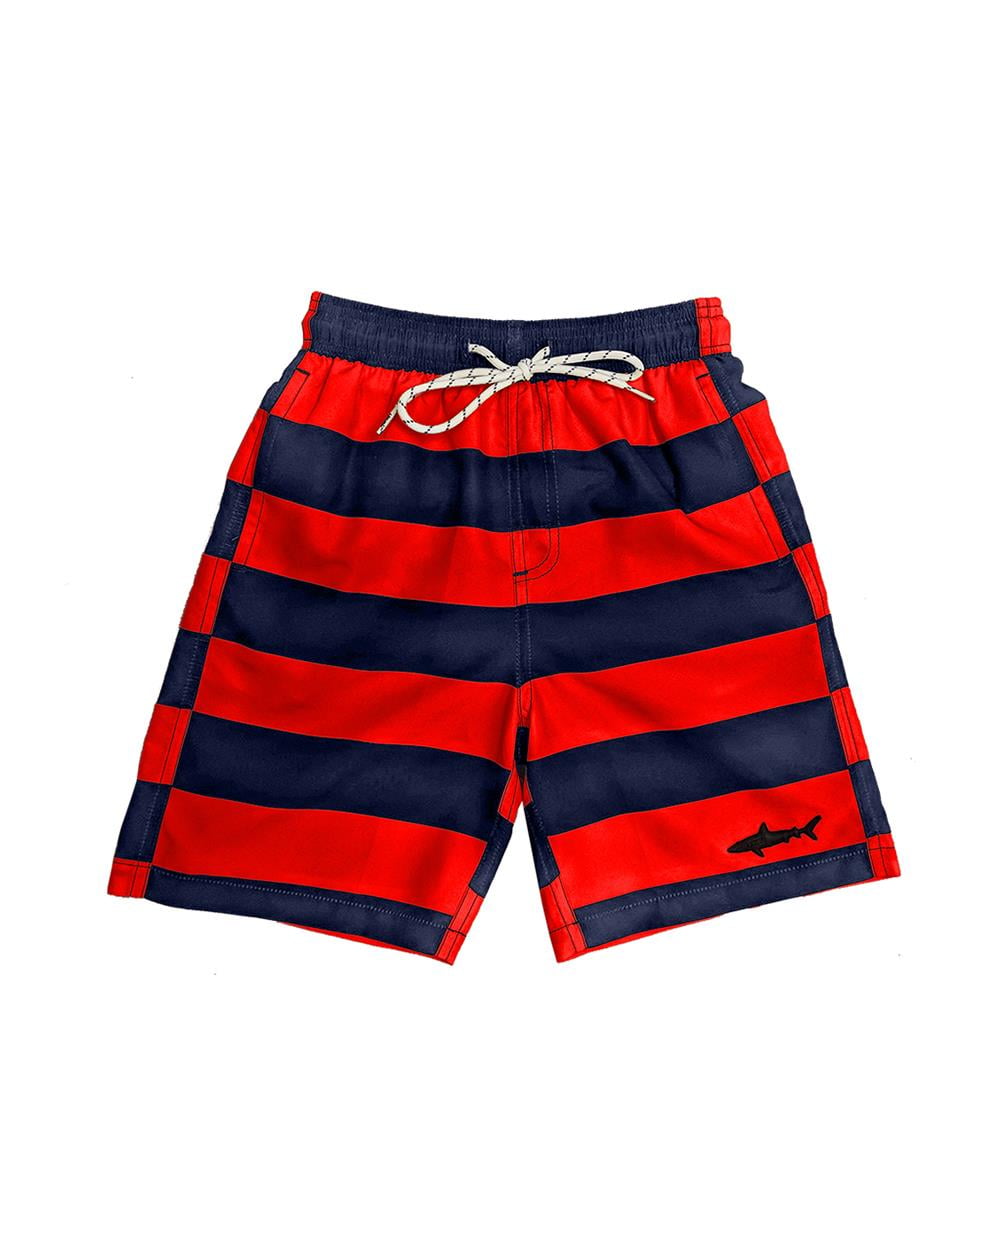 UZZI Kids Swim Shorts Fast Dry Fun Print, Red Stripes, Size: 6-8, Uzzi ...